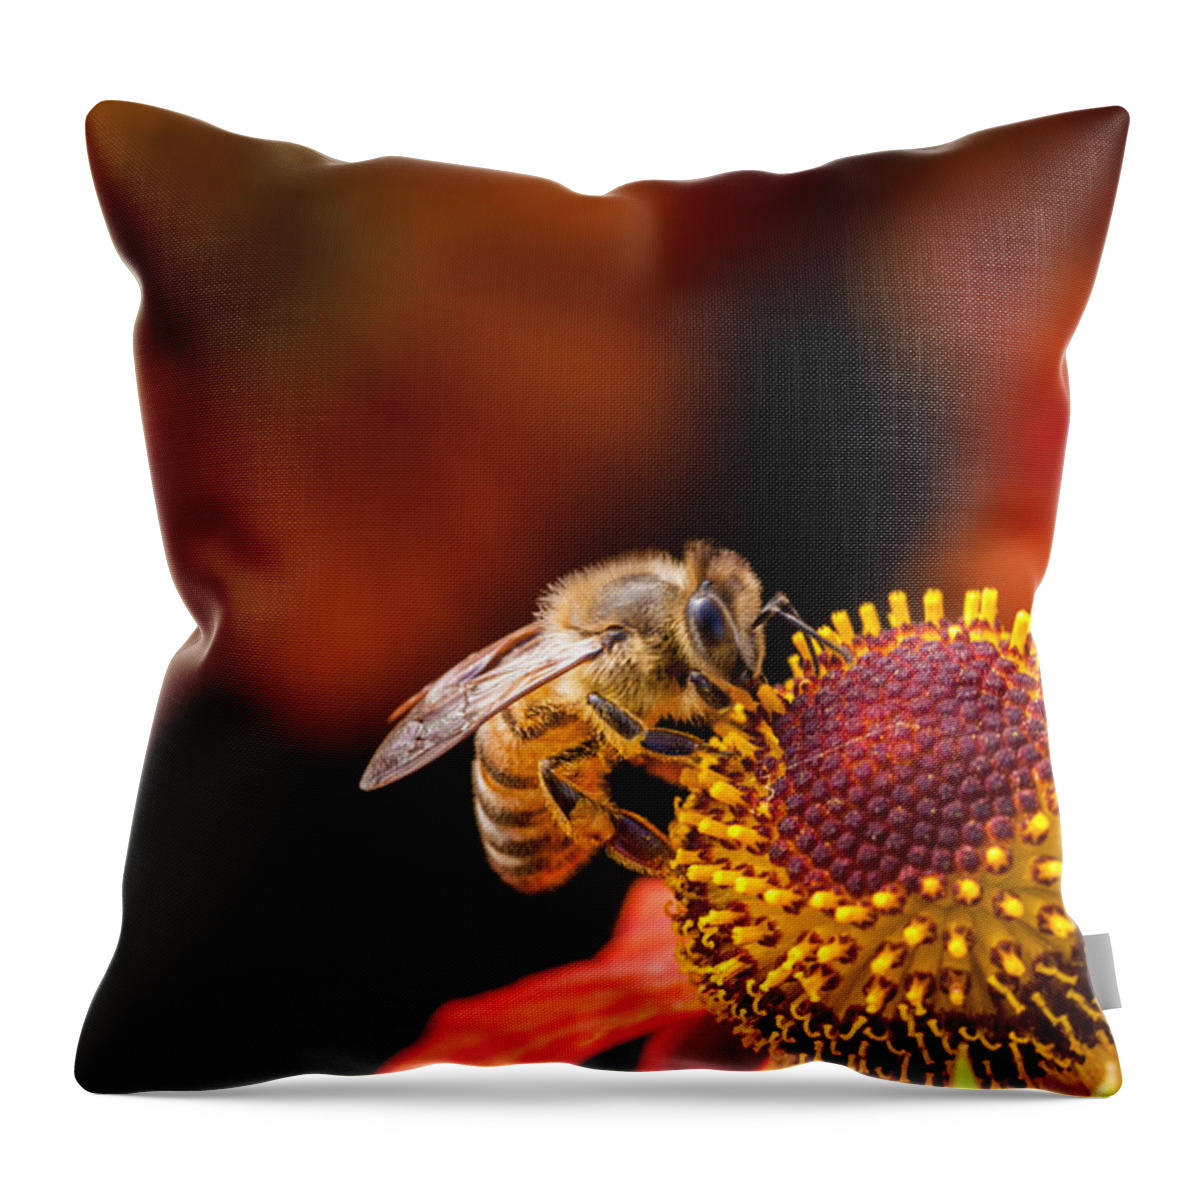 Bee Throw Pillow featuring the photograph Honeybee at Work by Jurgen Lorenzen